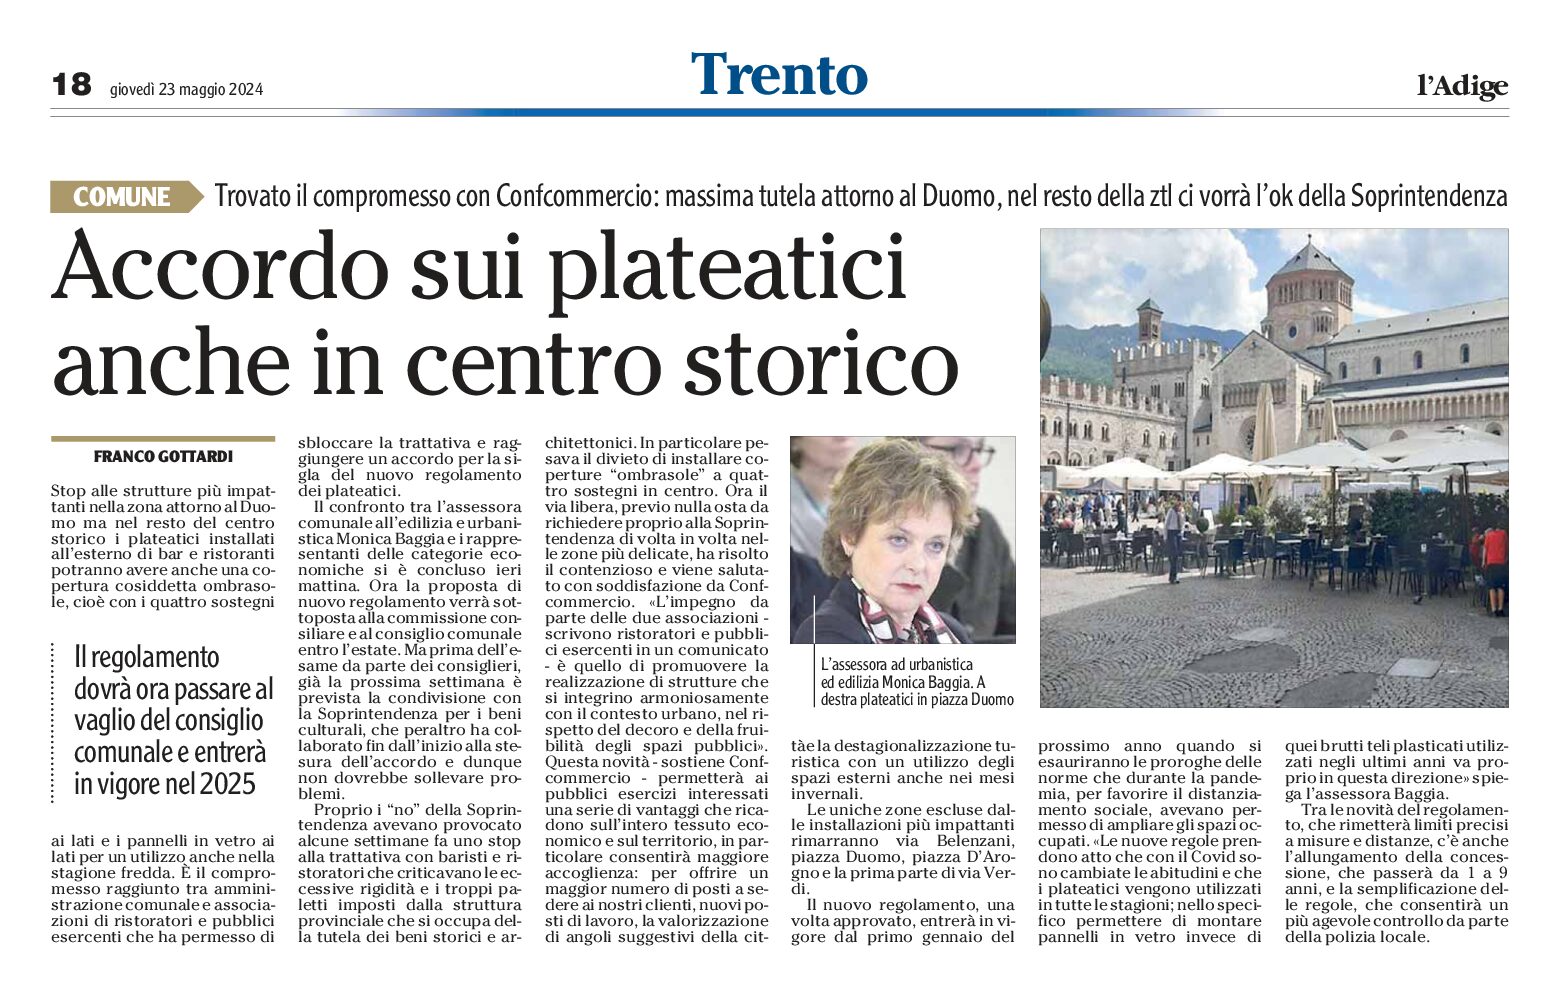 Trento: accordo sui plateatici anche in centro storico